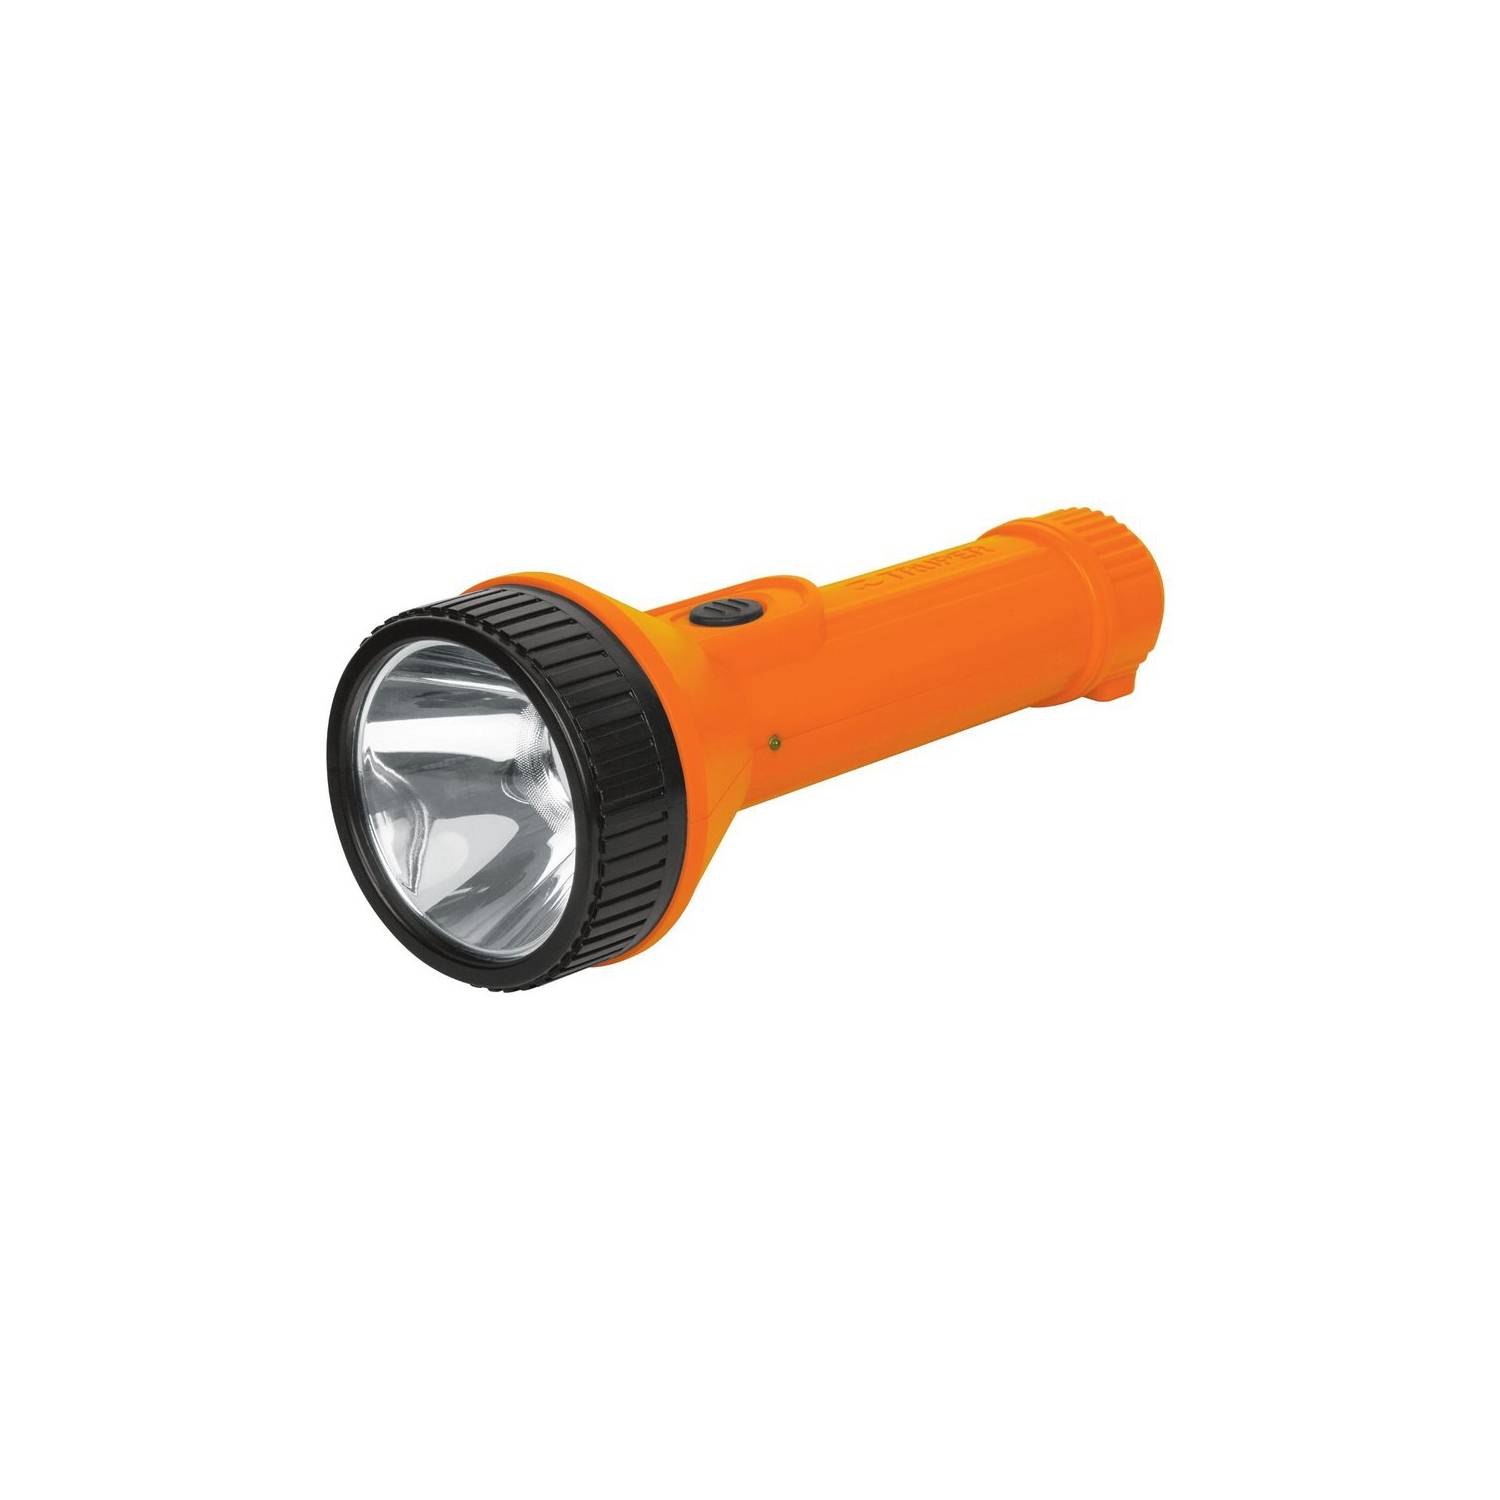 Linterna LED recargable de alta potencia  Potente linterna recargable -Nuevo-Aliexpress